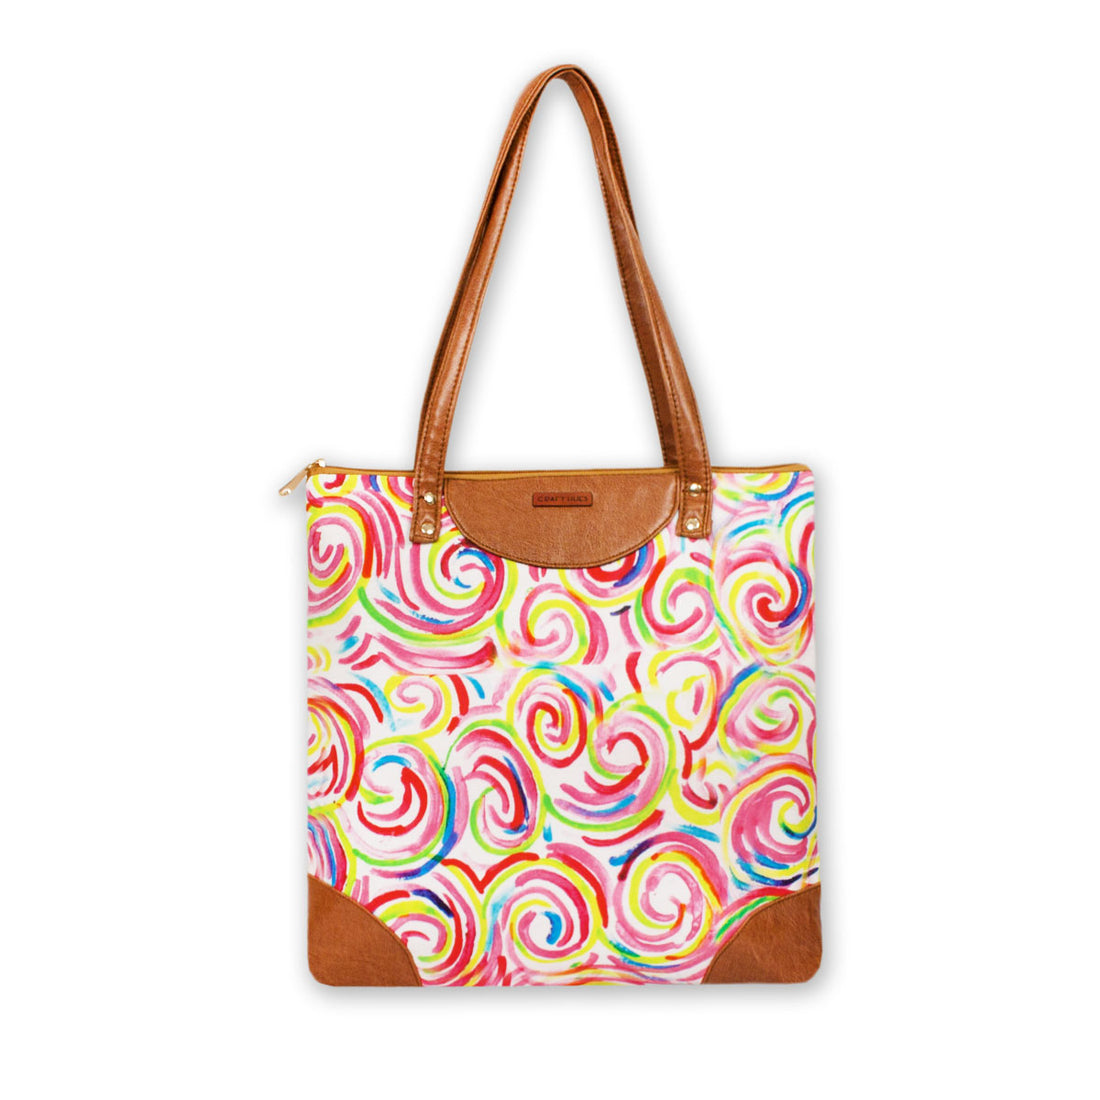 Spiral Printed Tote Bag